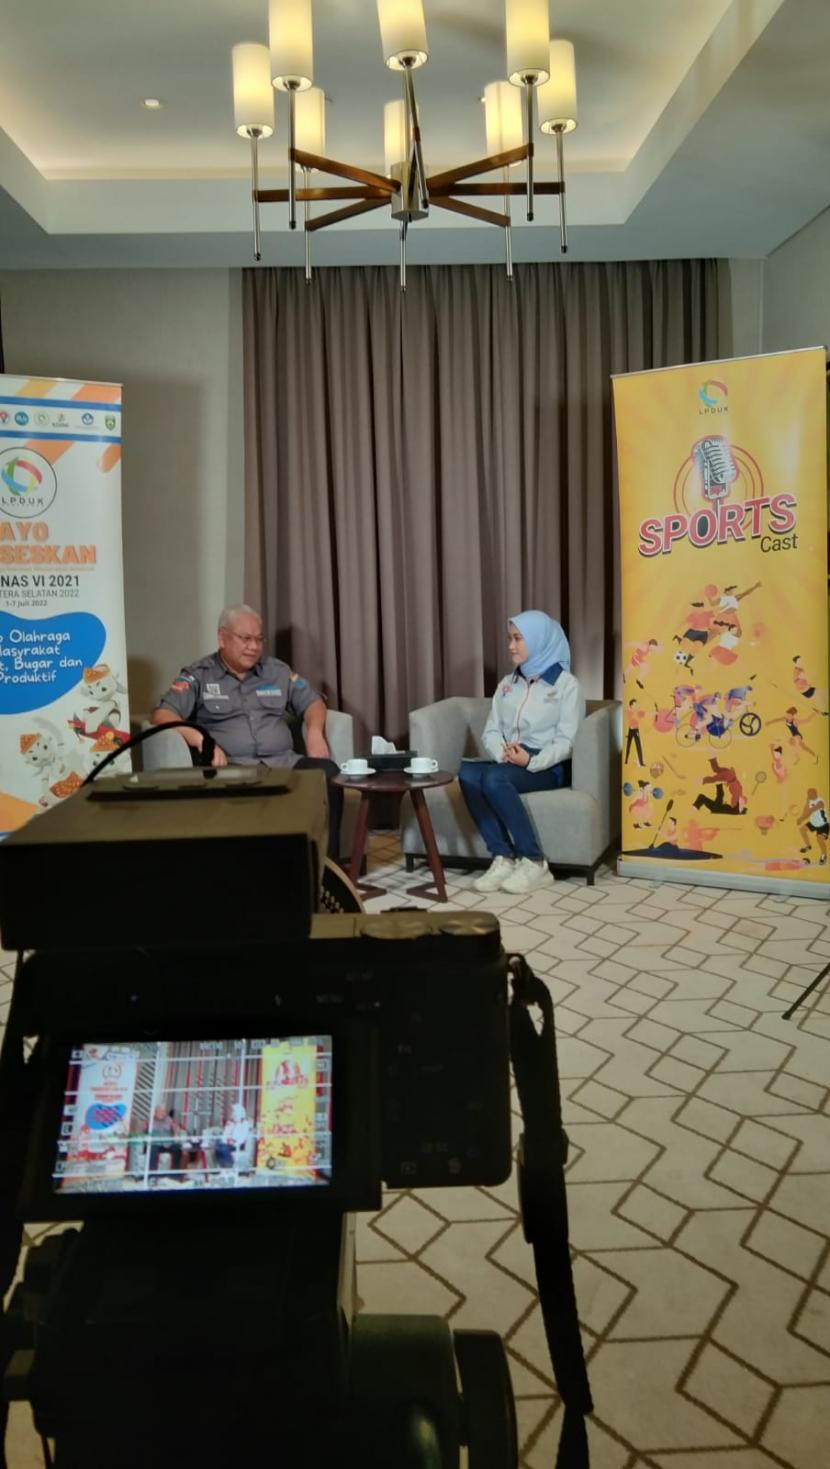 Ketua Panitia Pelaksana FORNAS VI 2021 Sumatera Selatan Tahun 2022, Achmad Syamsudin (kiri) saat mengisi acara Podcast Sportcast LPDUK dengan host presenter Nada Nasyaya di Palembang, Sumatera Selatan, Senin (4/7/2022).